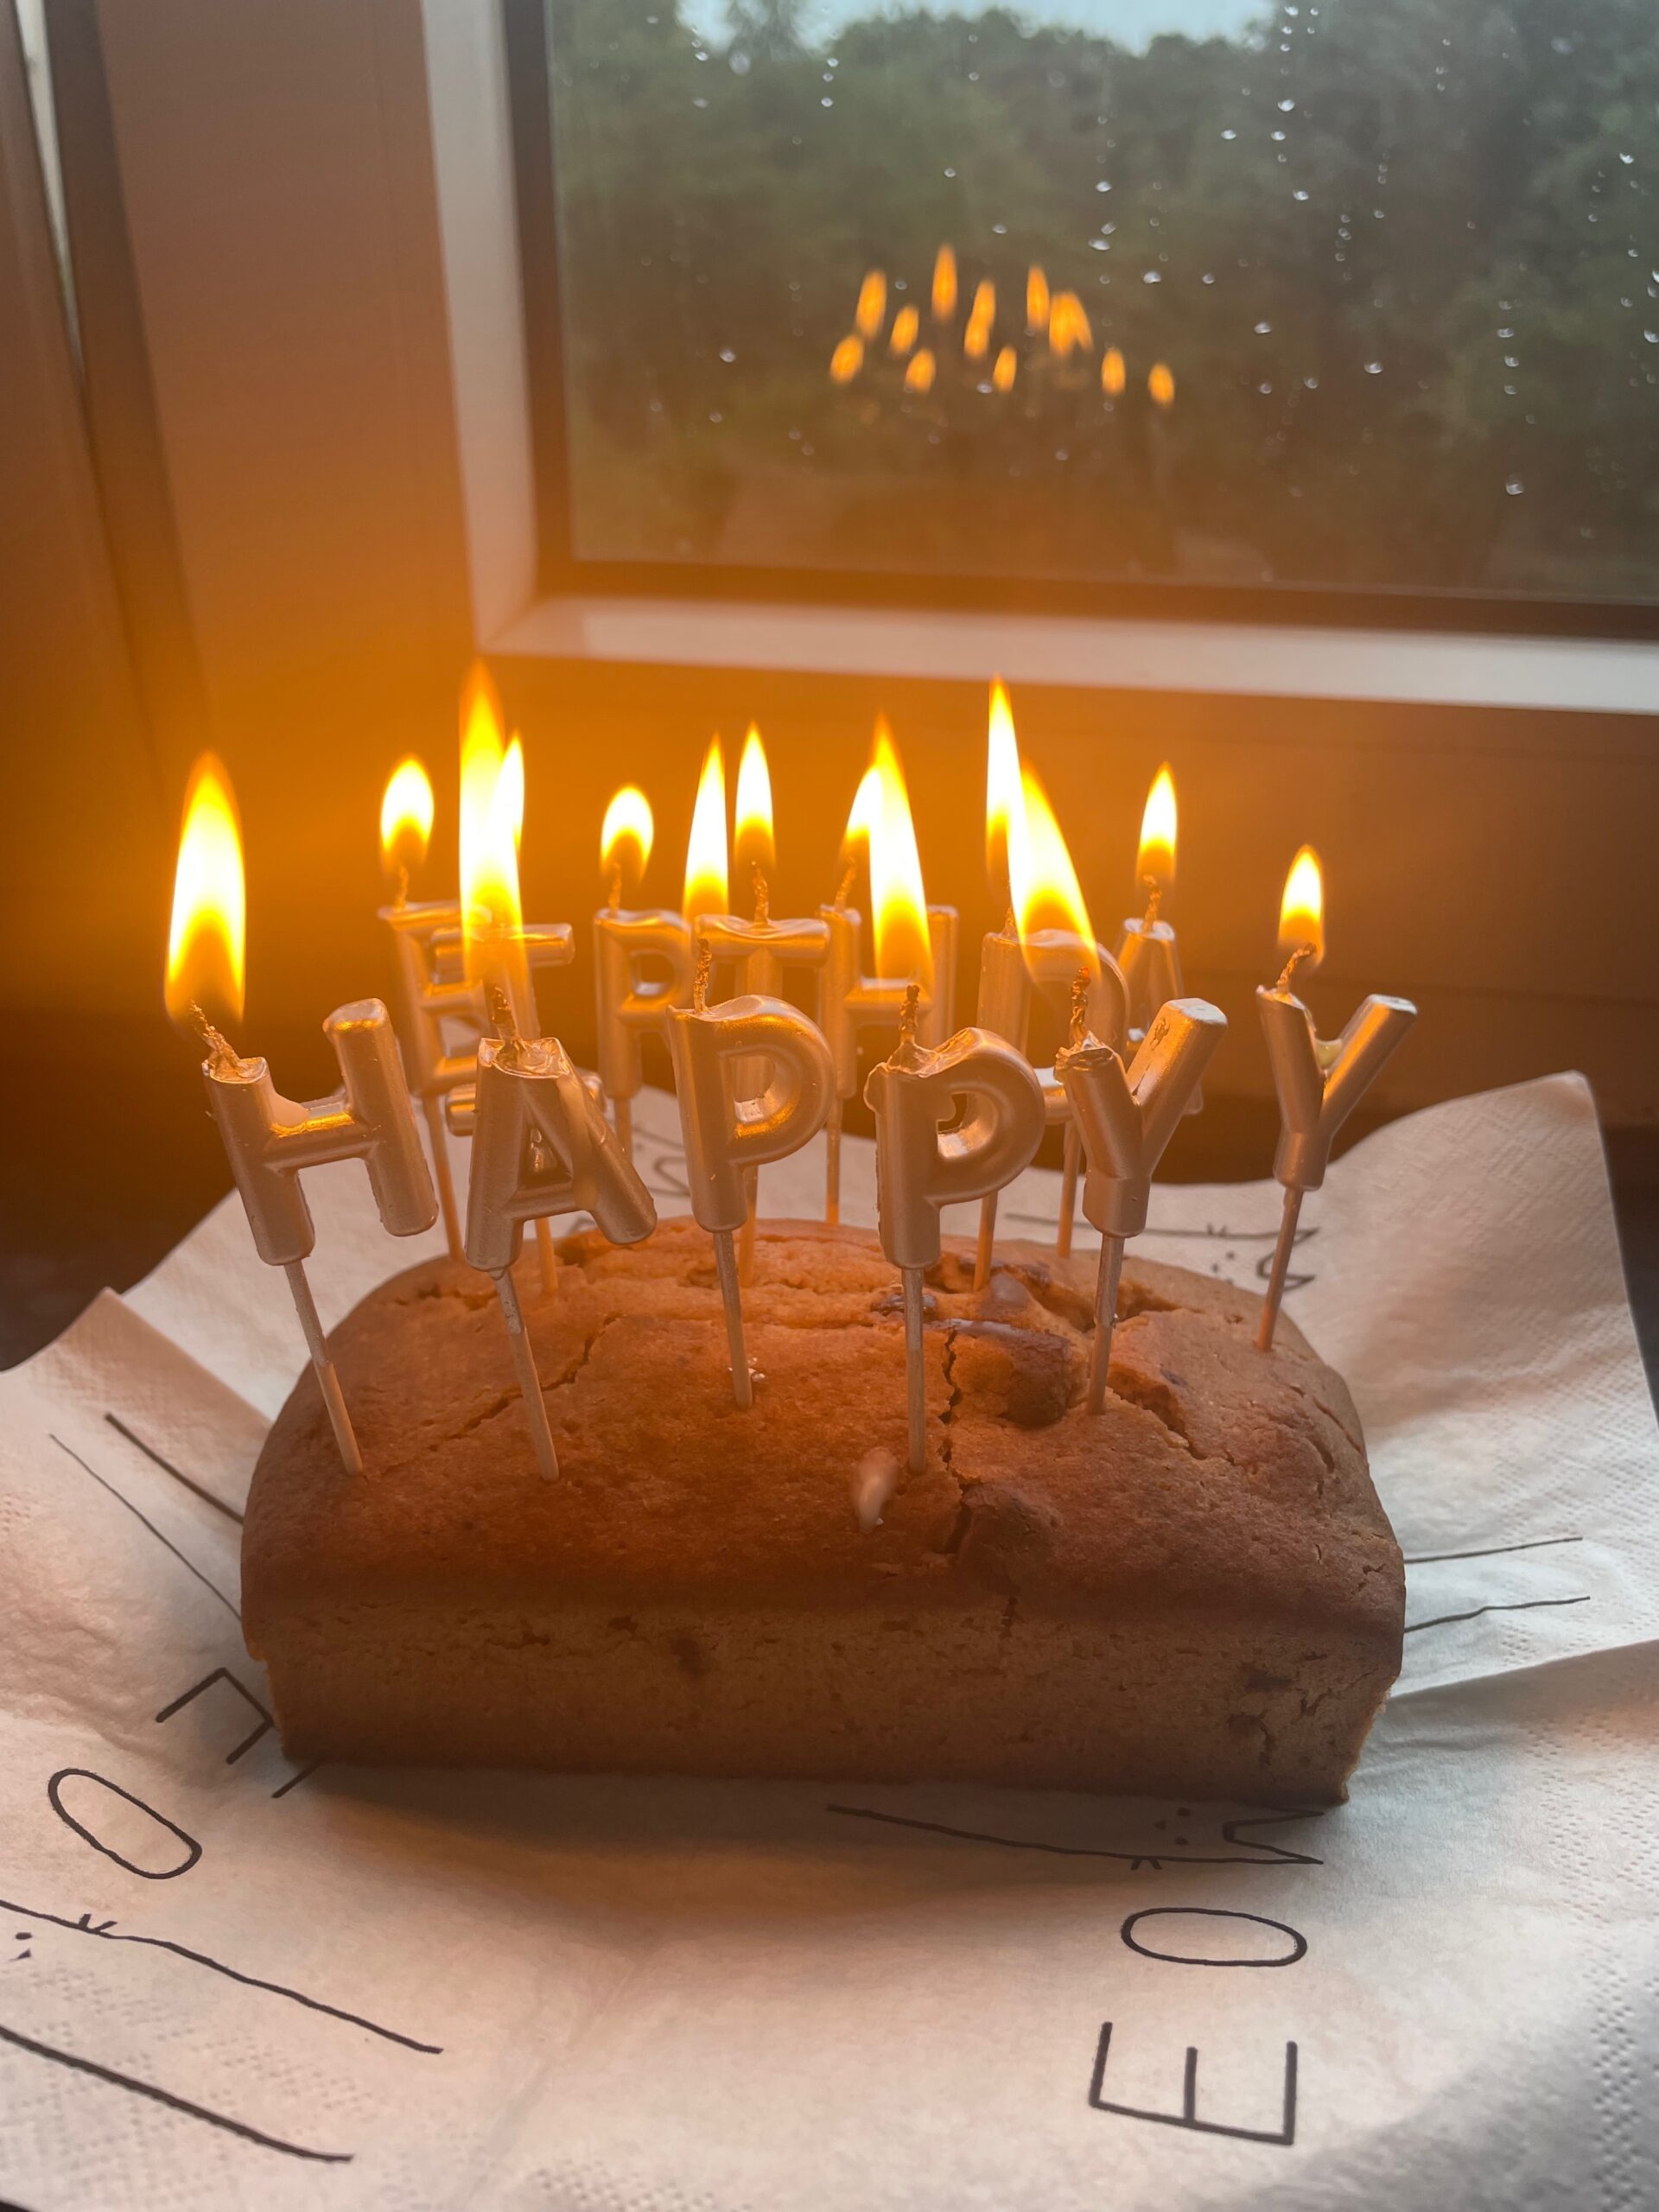 Happy birthday cake for Colena in Kiel - Nadine Kuehn